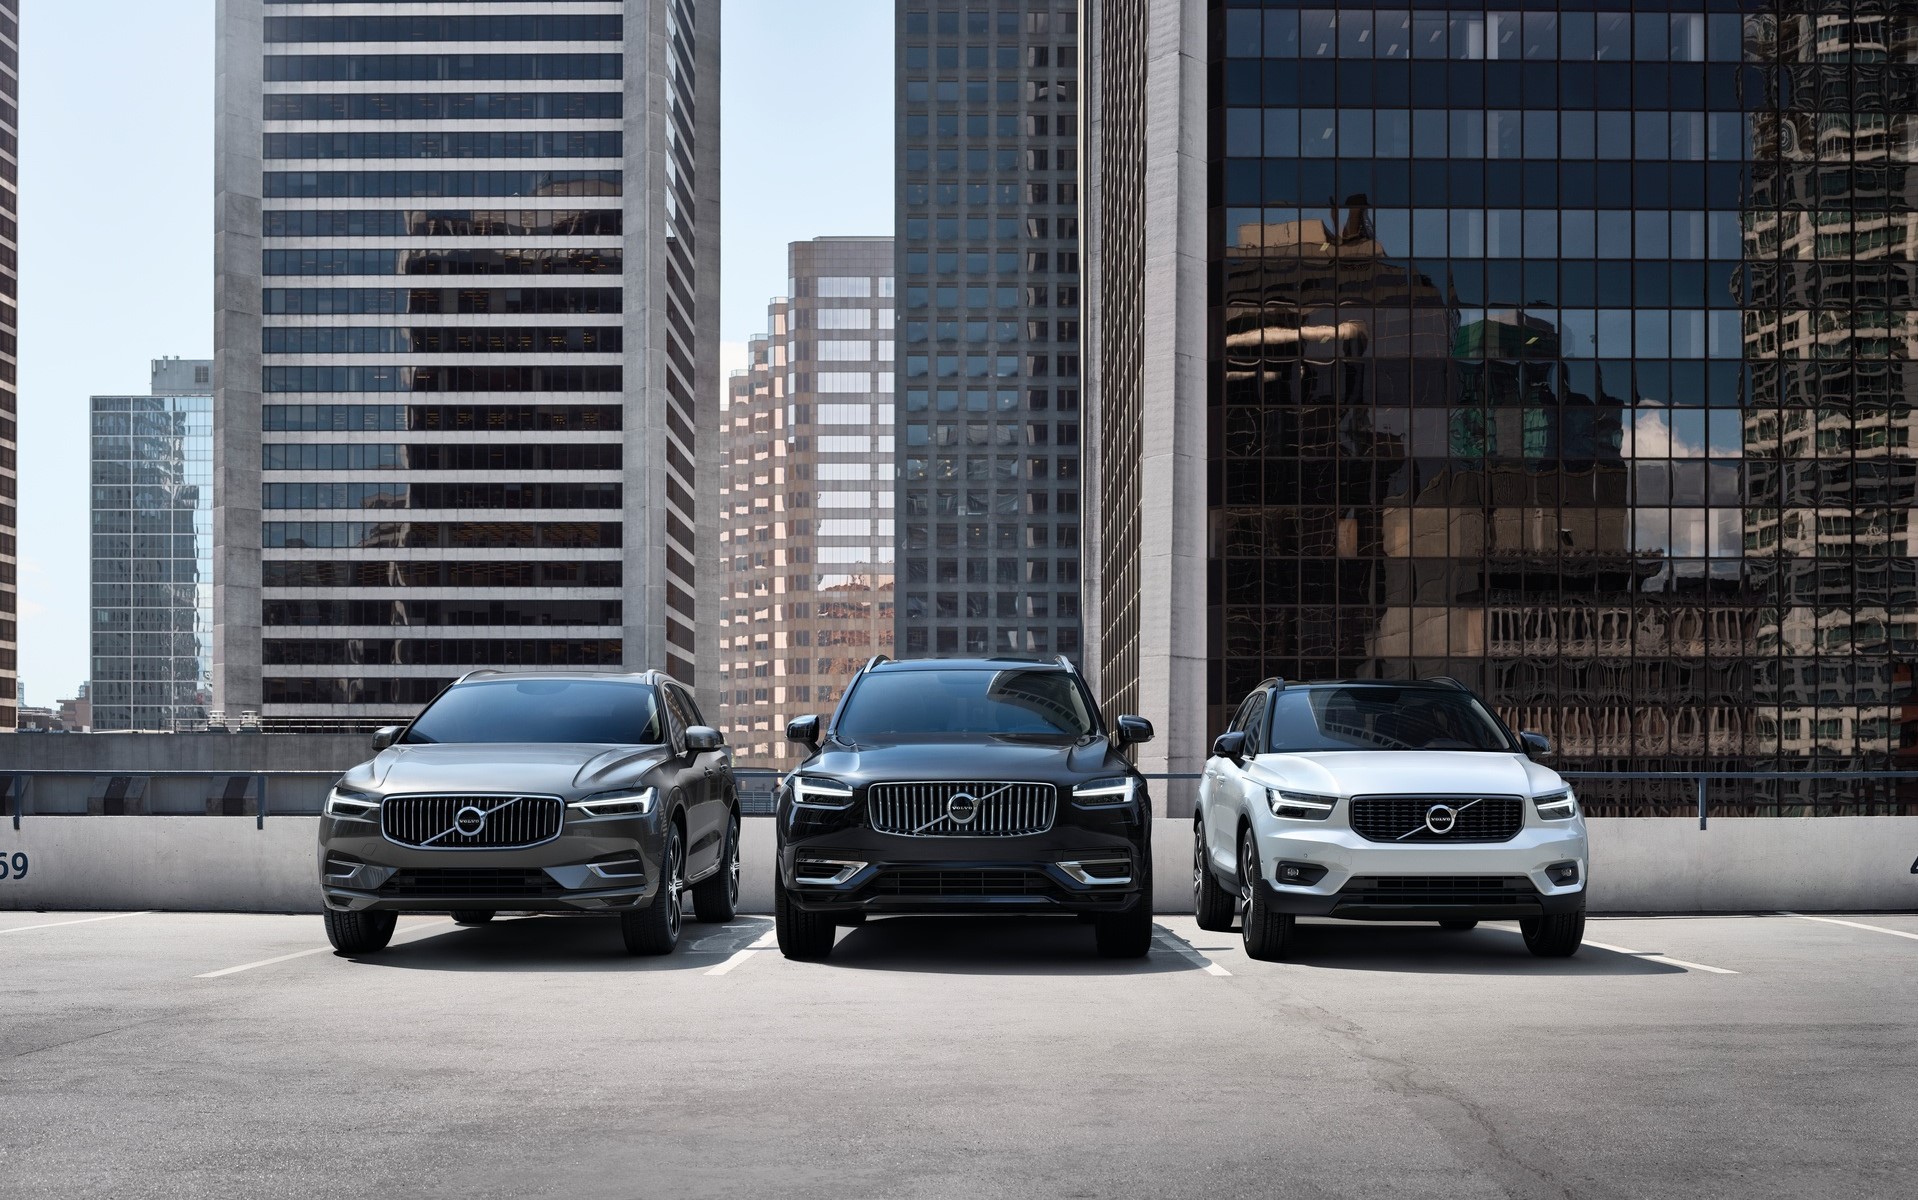 Volvo Car supera a Audi em vendas no segmento premium